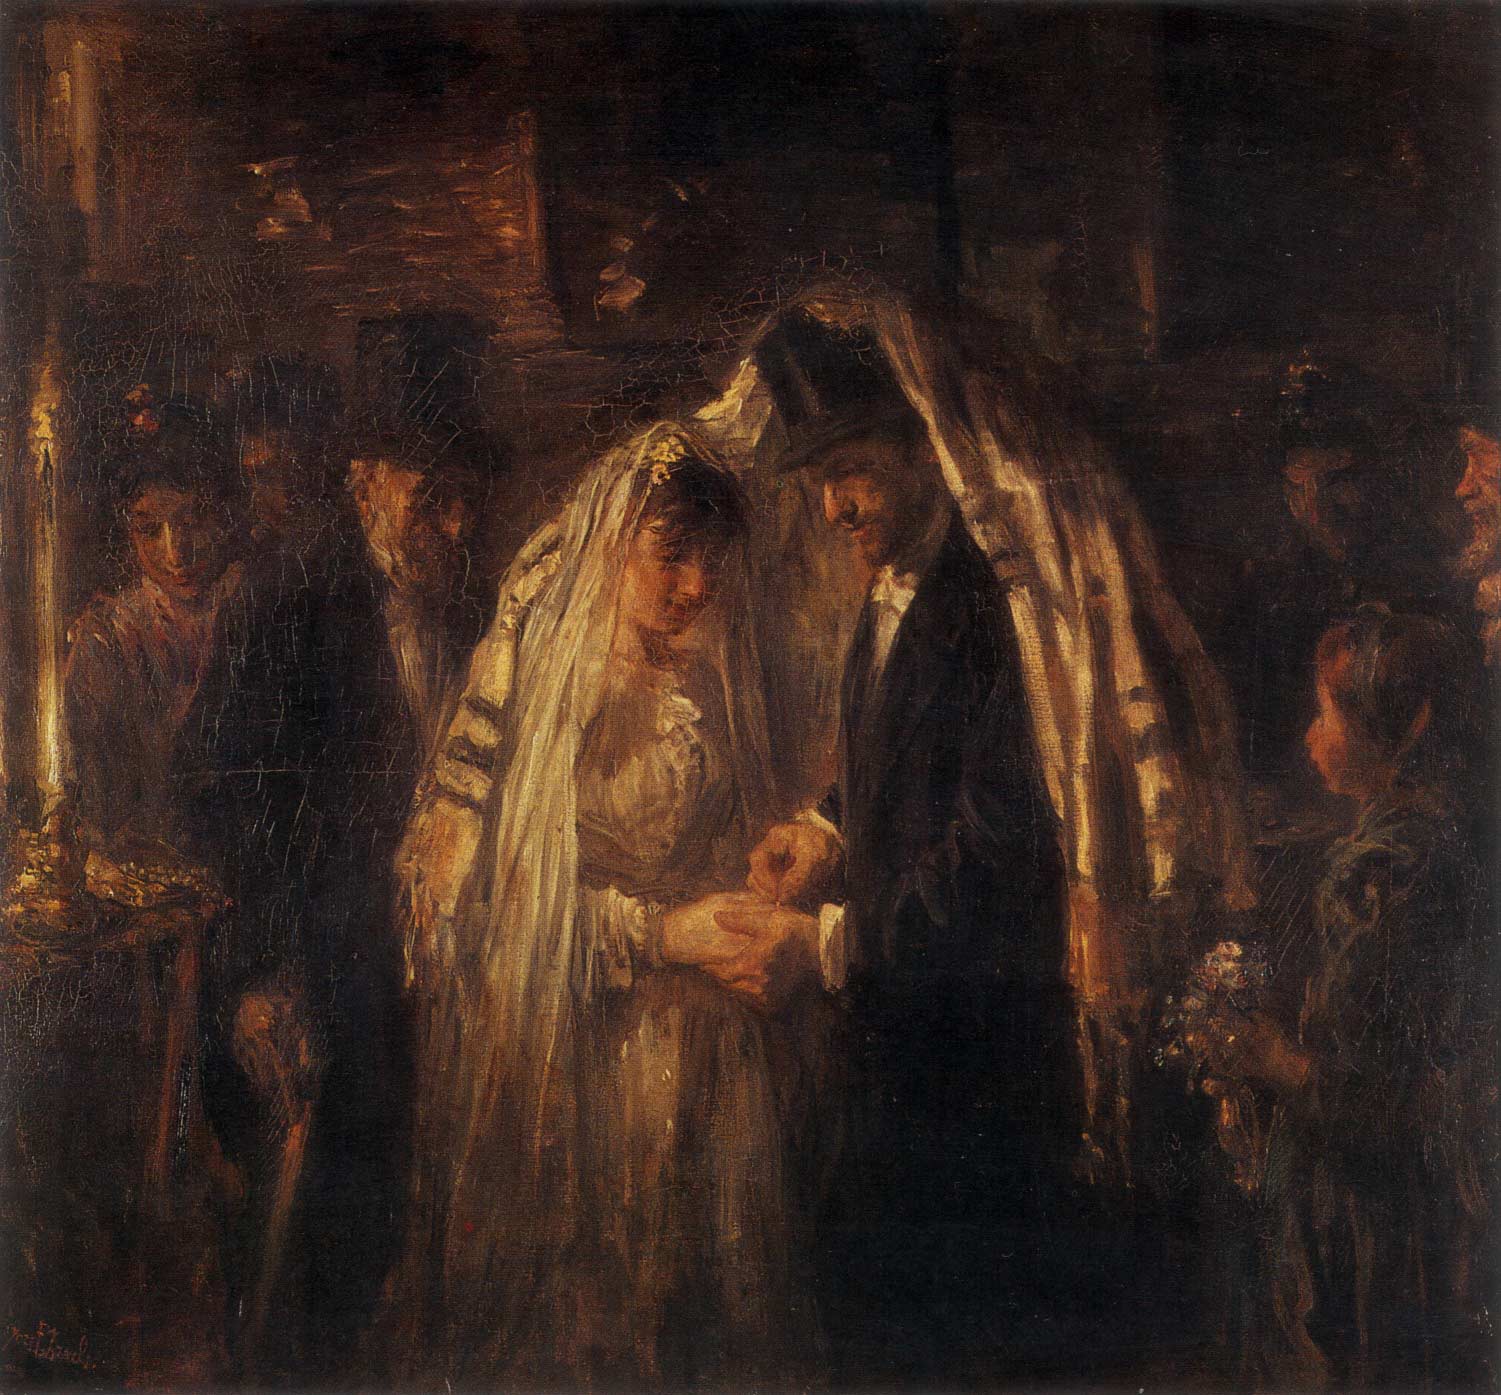 Josef Israëls, A Jewish Wedding, 1903